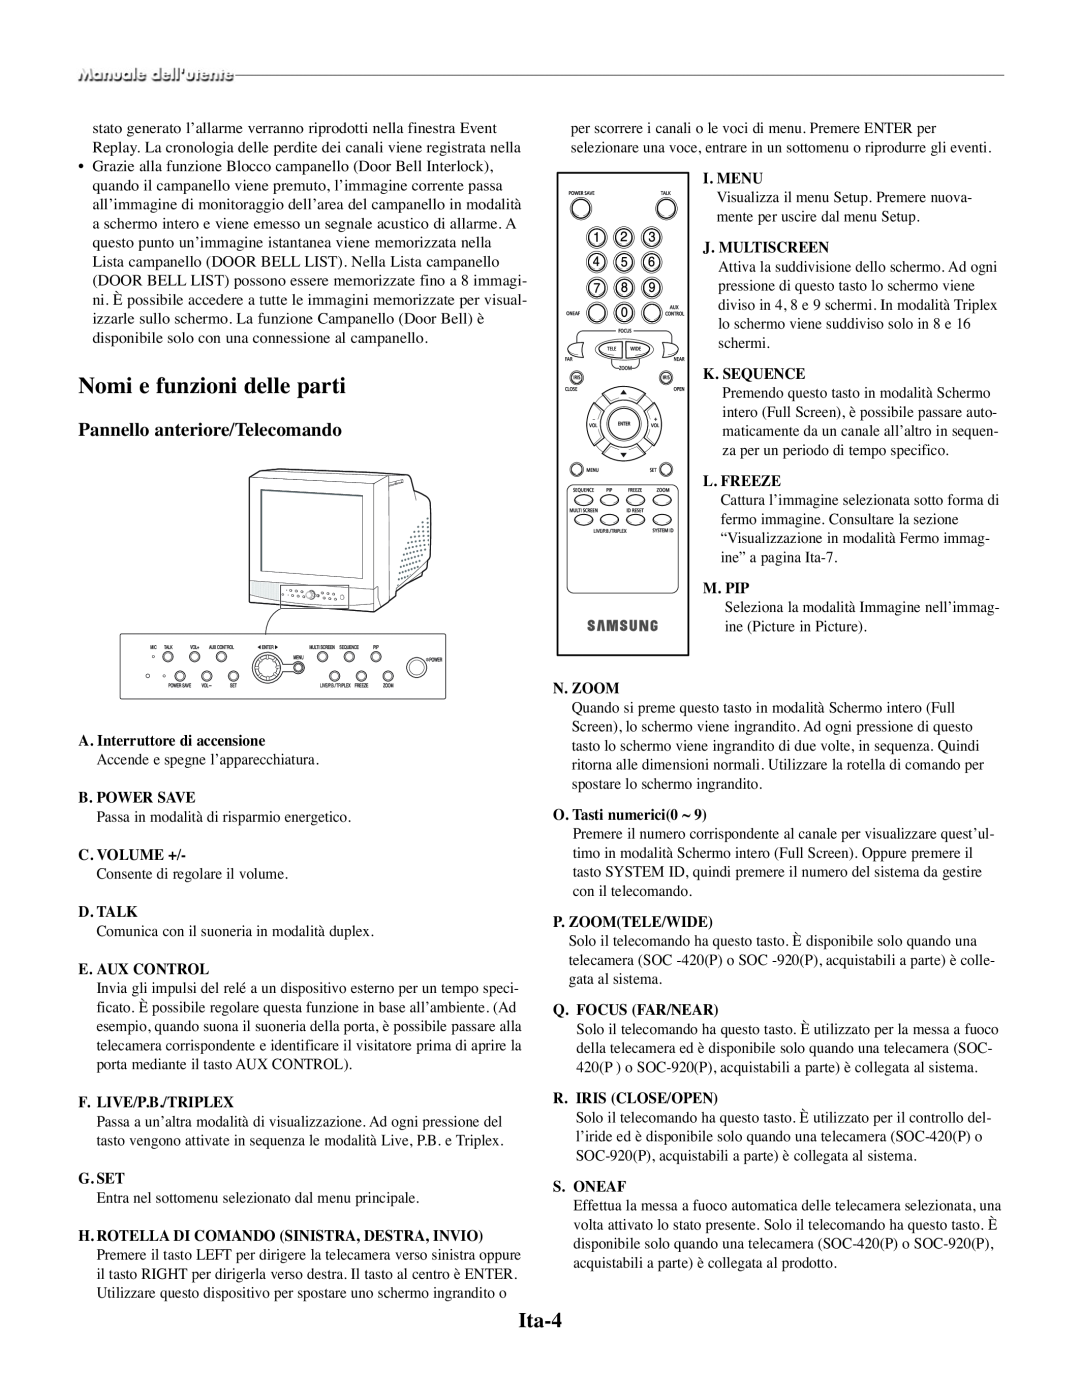 Samsung SMO-210TRP manual Nomi e funzioni delle parti, Ita-4, Pannello anteriore/Telecomando, A. Interruttore di accensione 